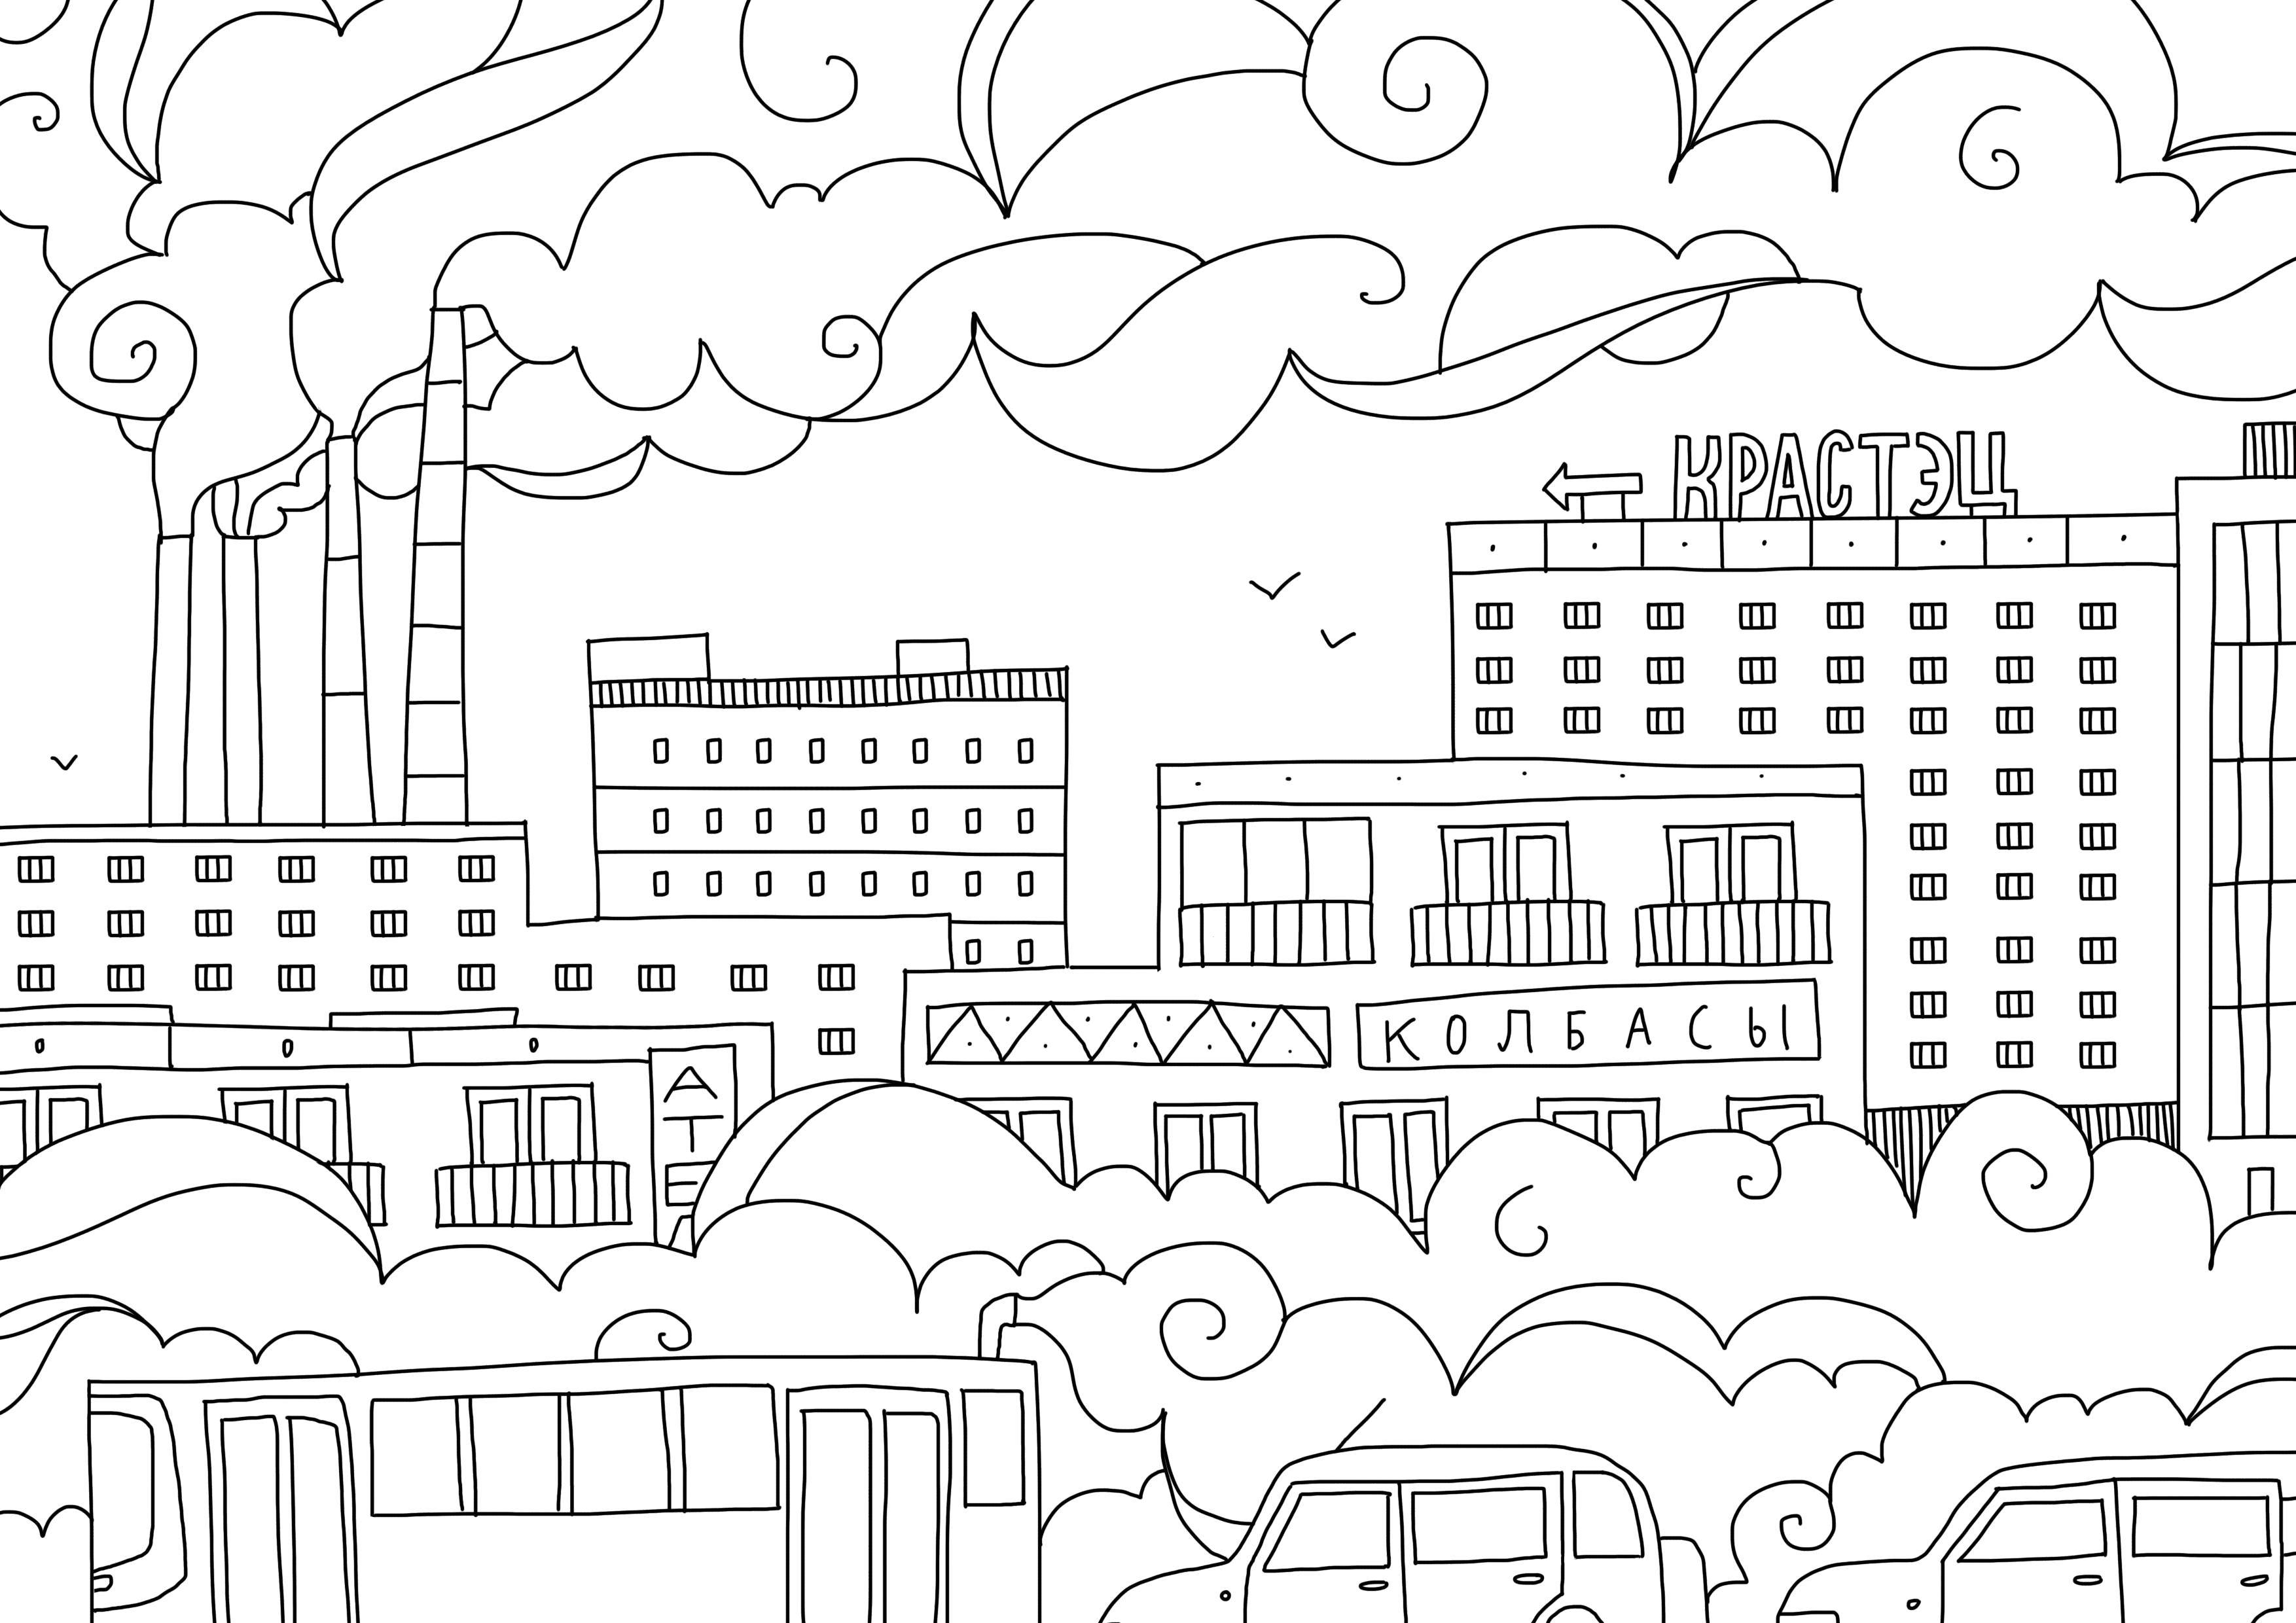 Опис: розмальовки  Міське життя. Категорія: місто. Теги:  Місто , будинки, дороги, дахи.